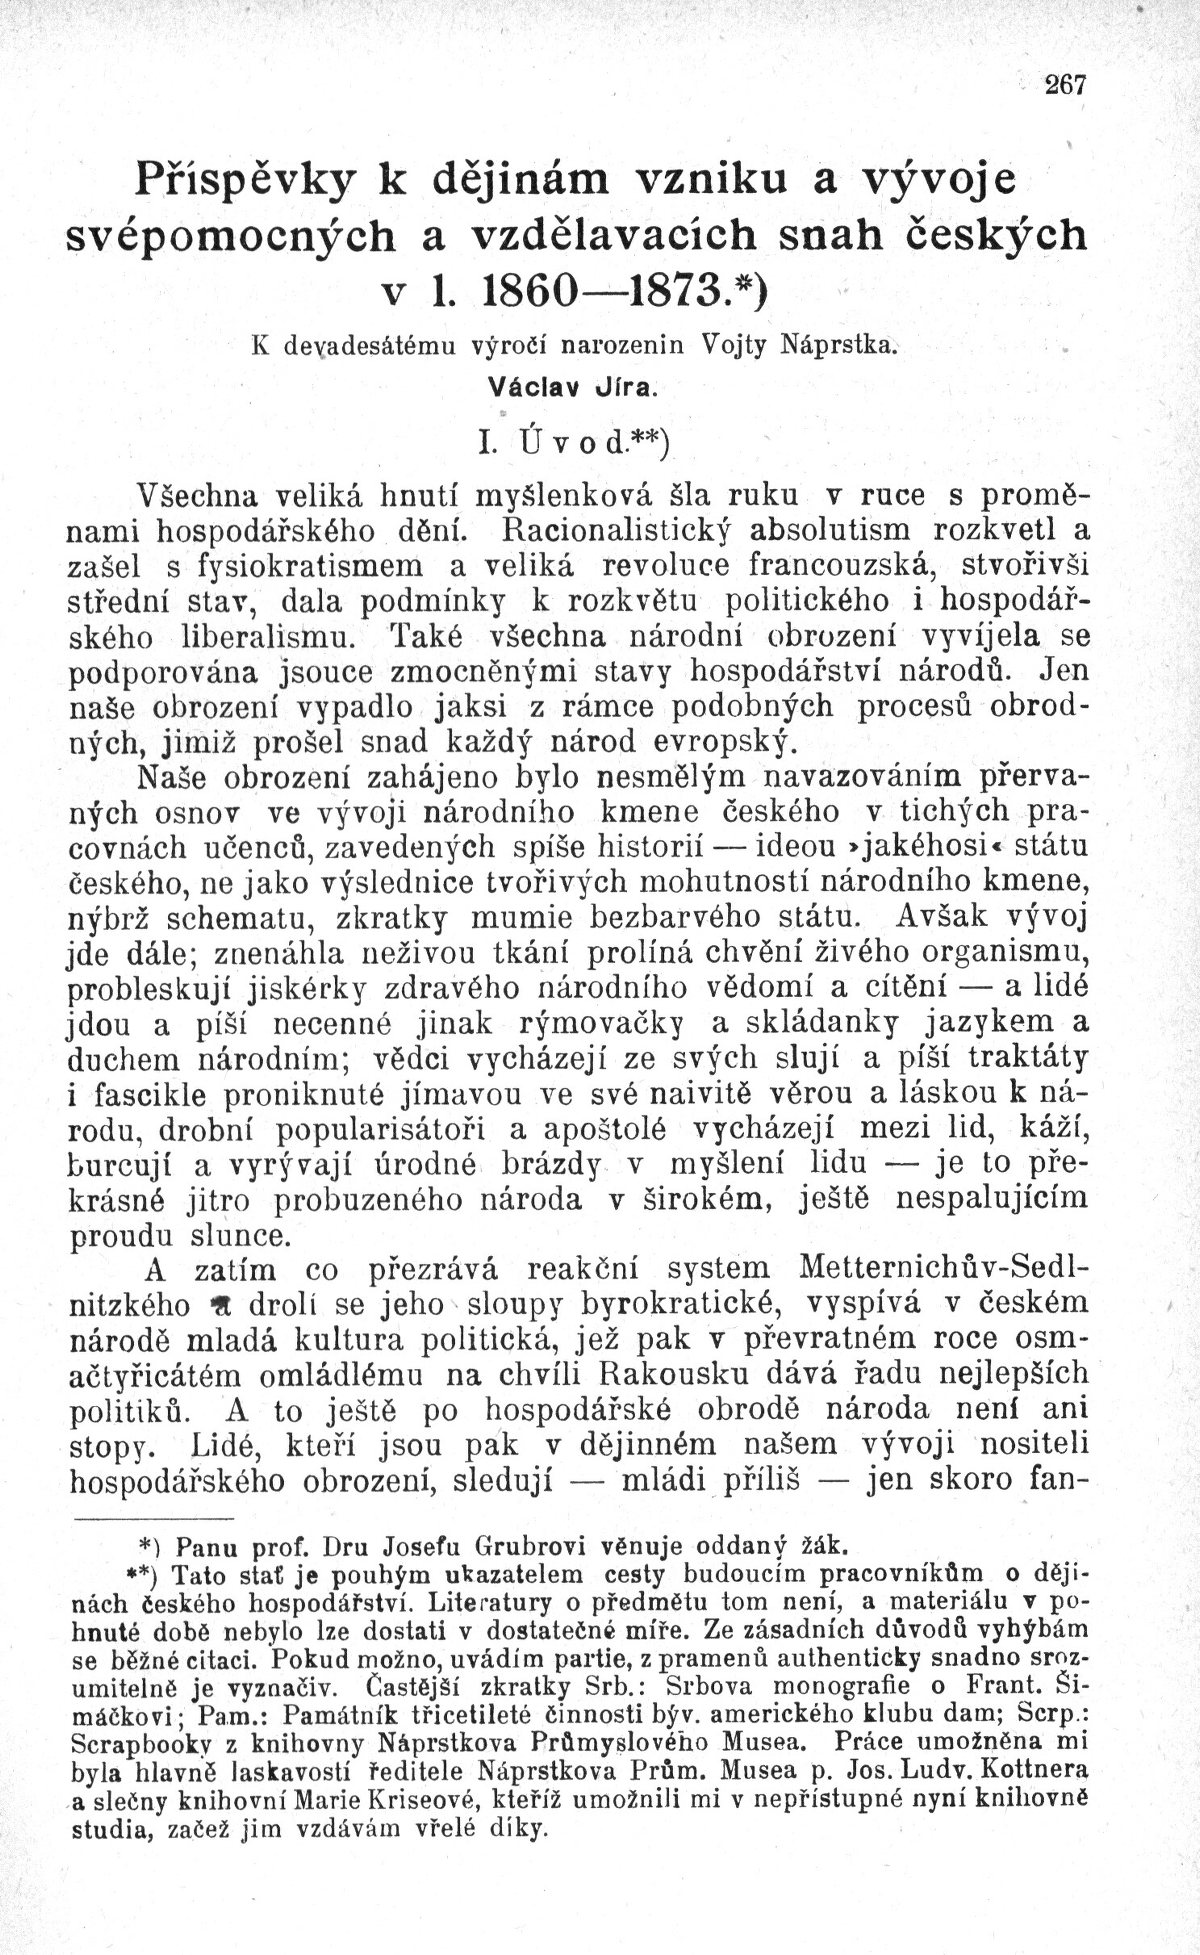 Příspěvky k dějinám vzniku a vývoje svépomocných a vzdělávacích snah českých v l. 1860-1873